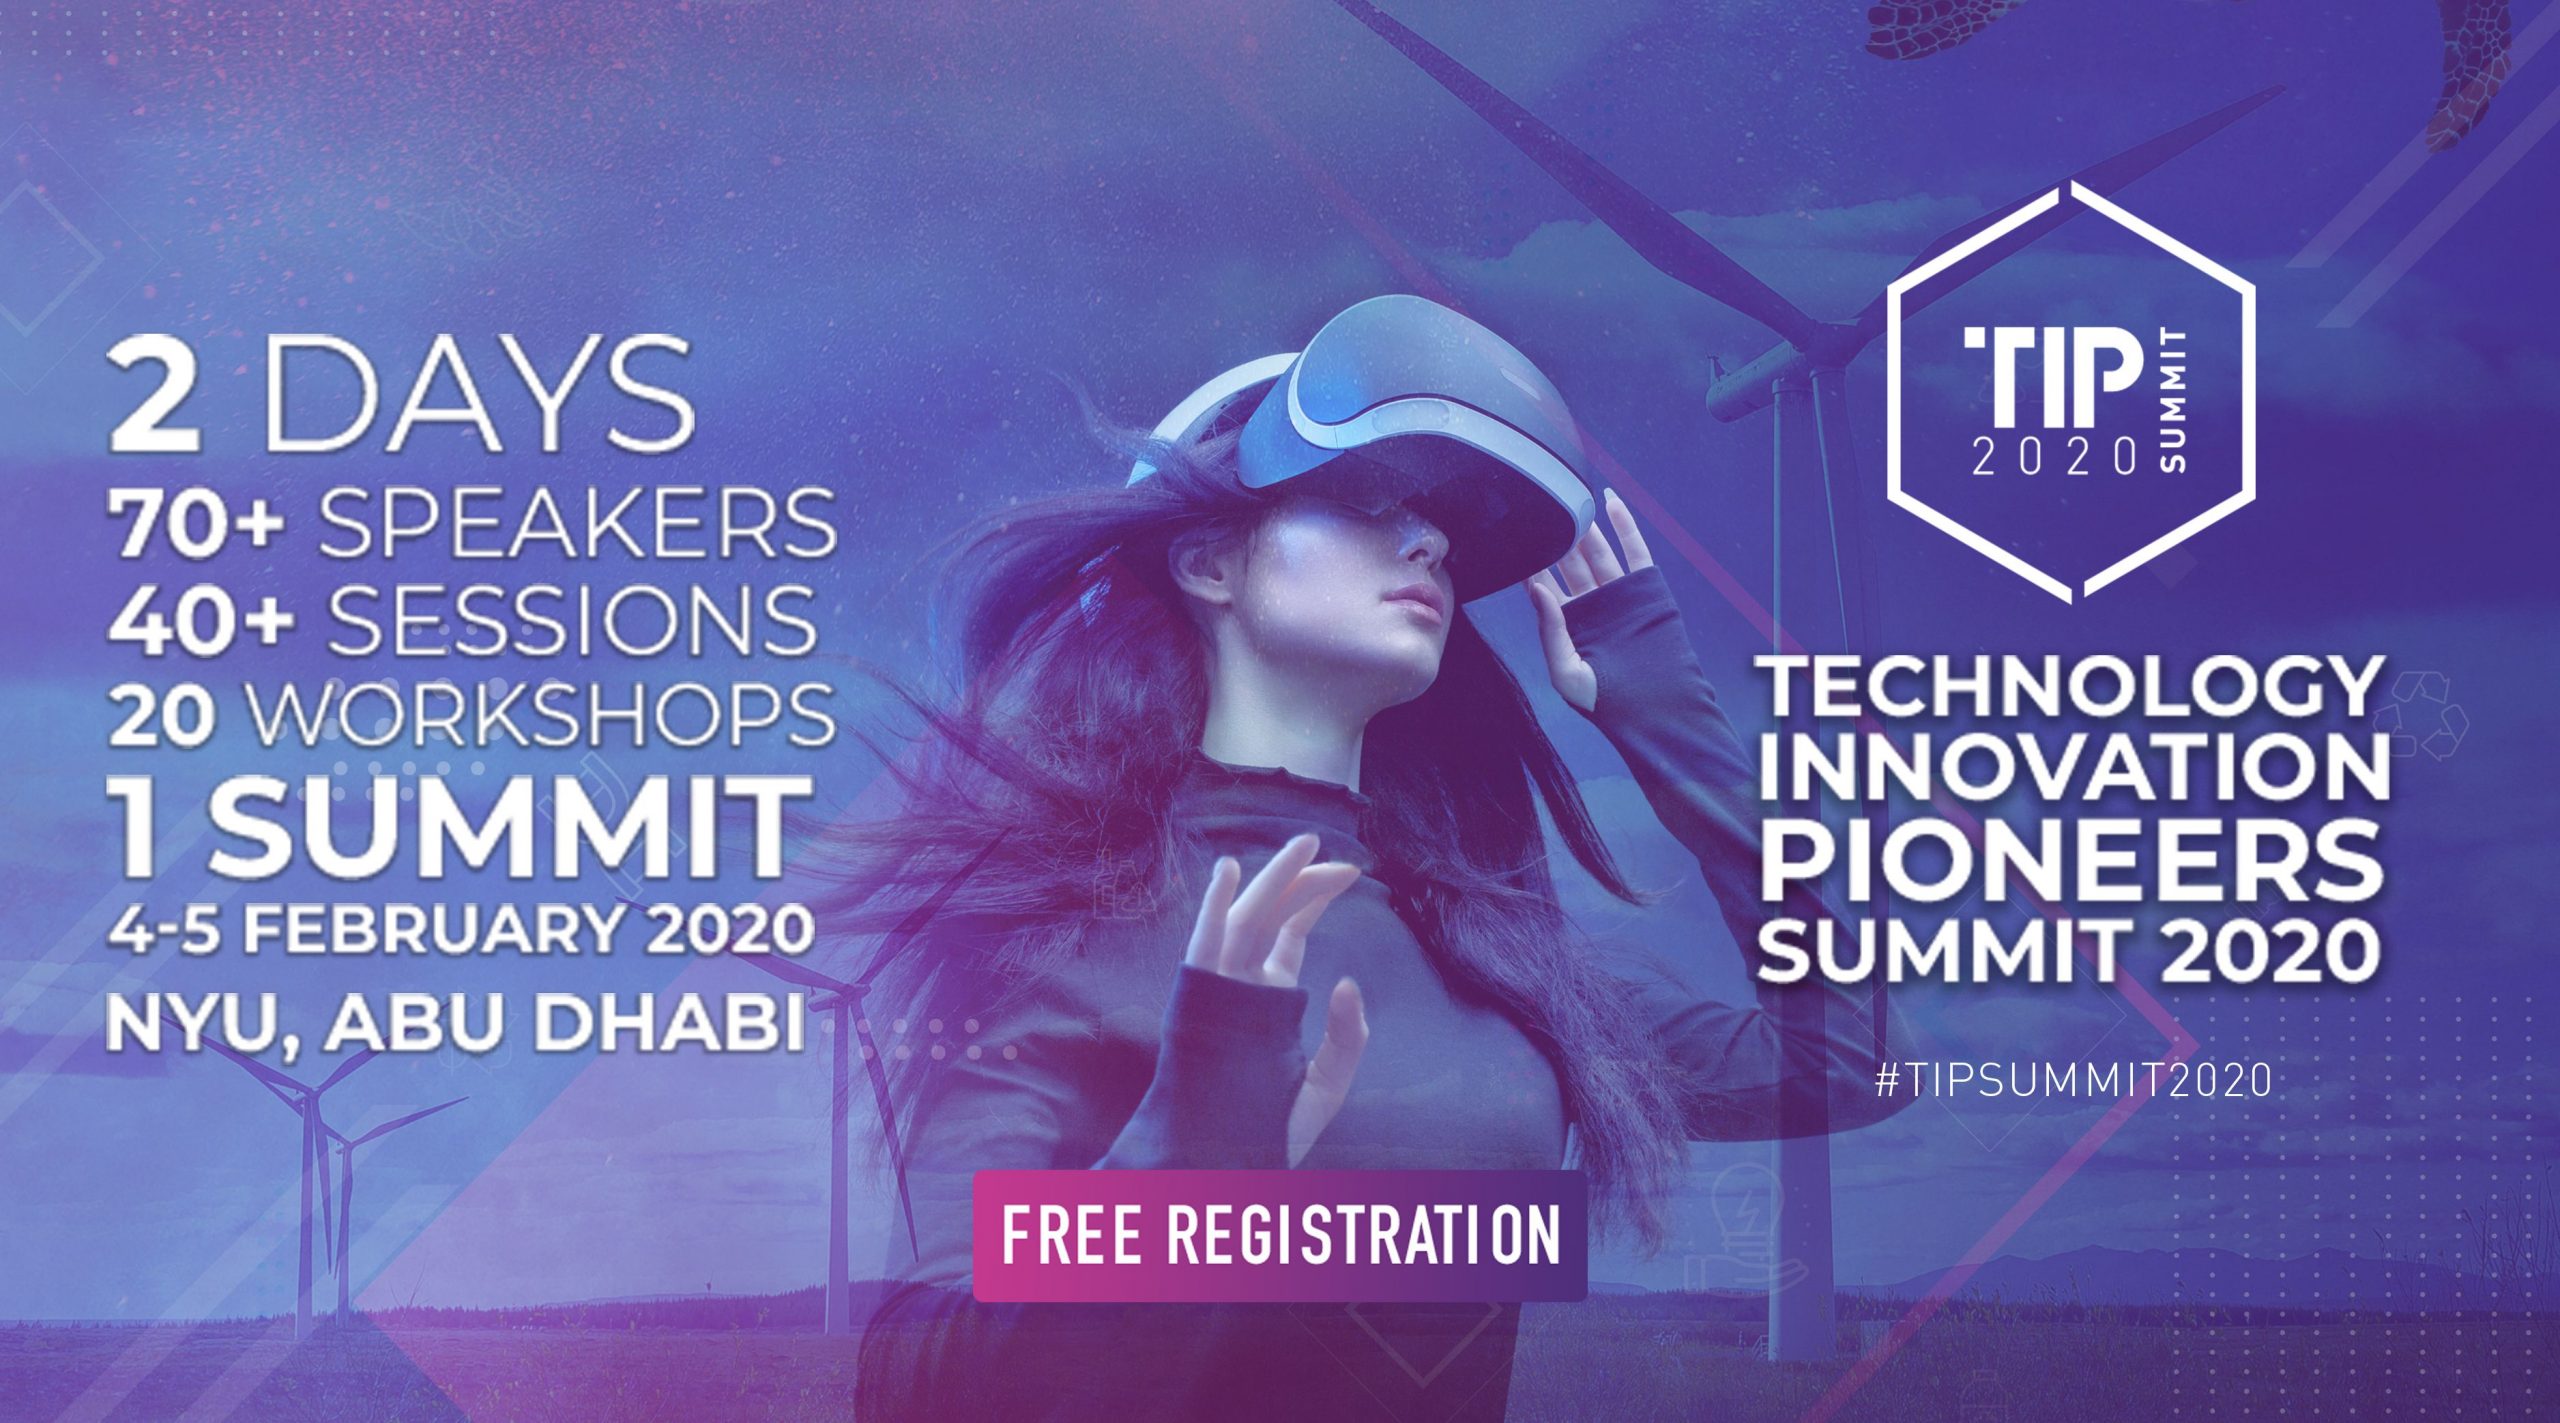 TIP Summit 2020 - Coming Soon in UAE